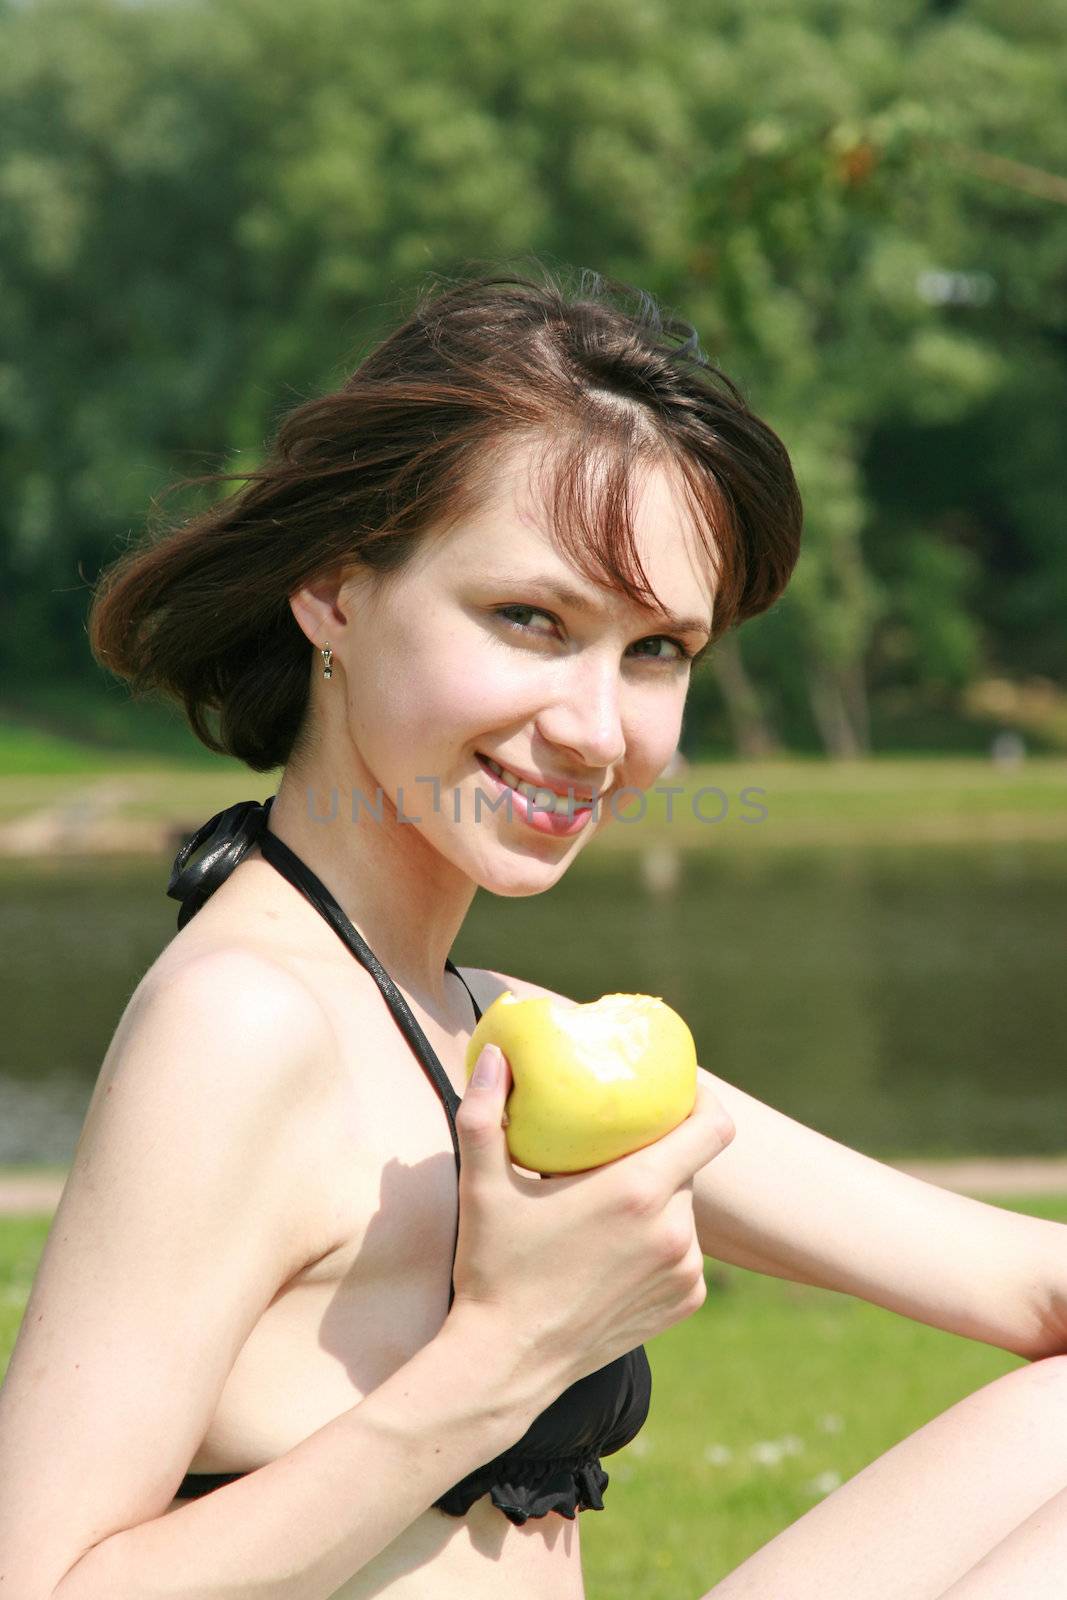 The beautiful girl in bikini eats an apple